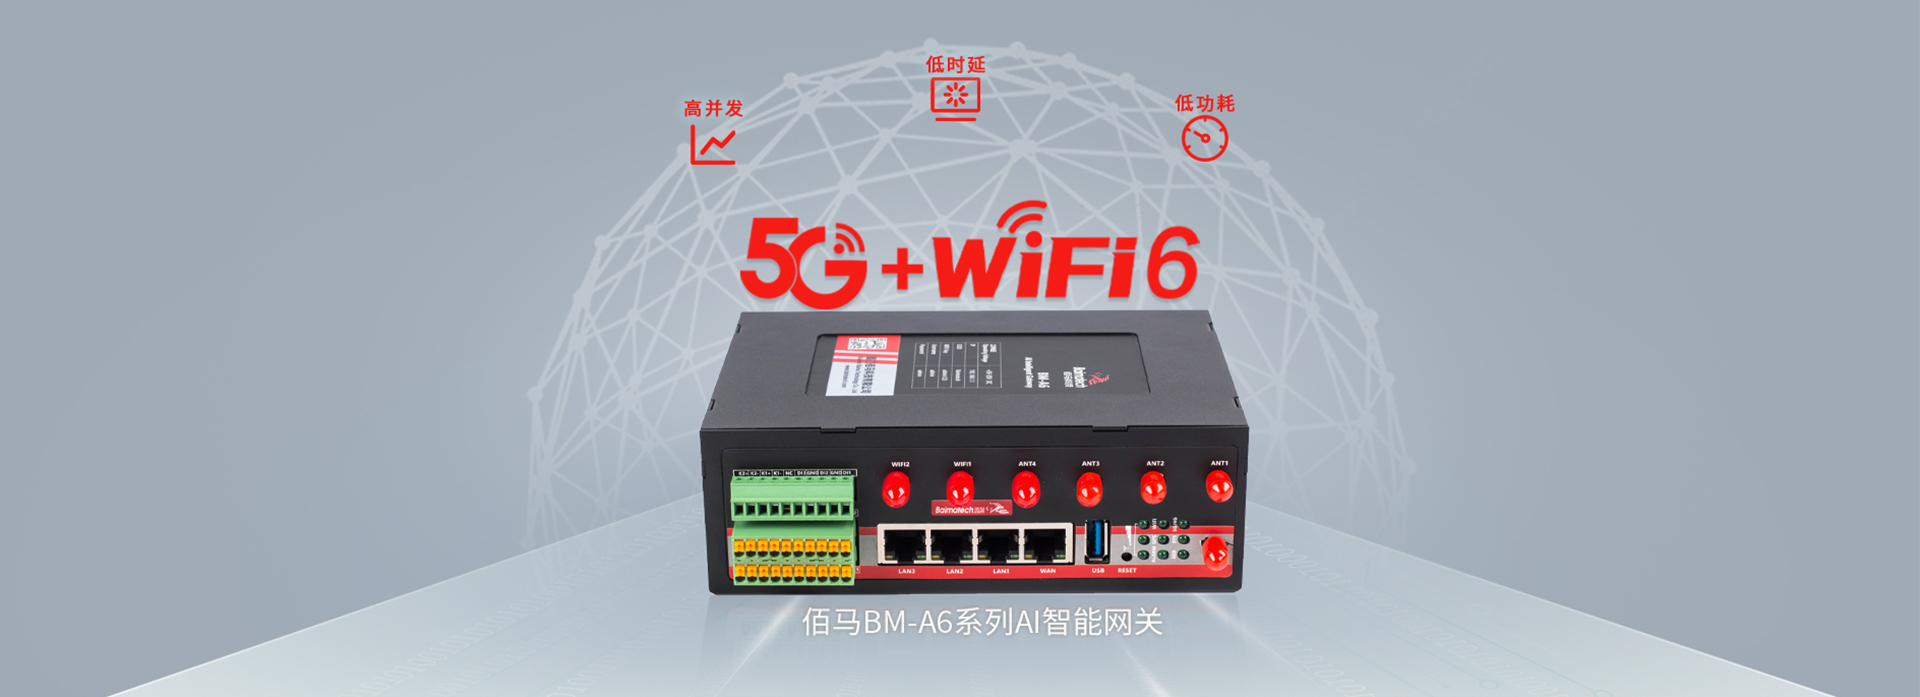 5G wifi 6网关